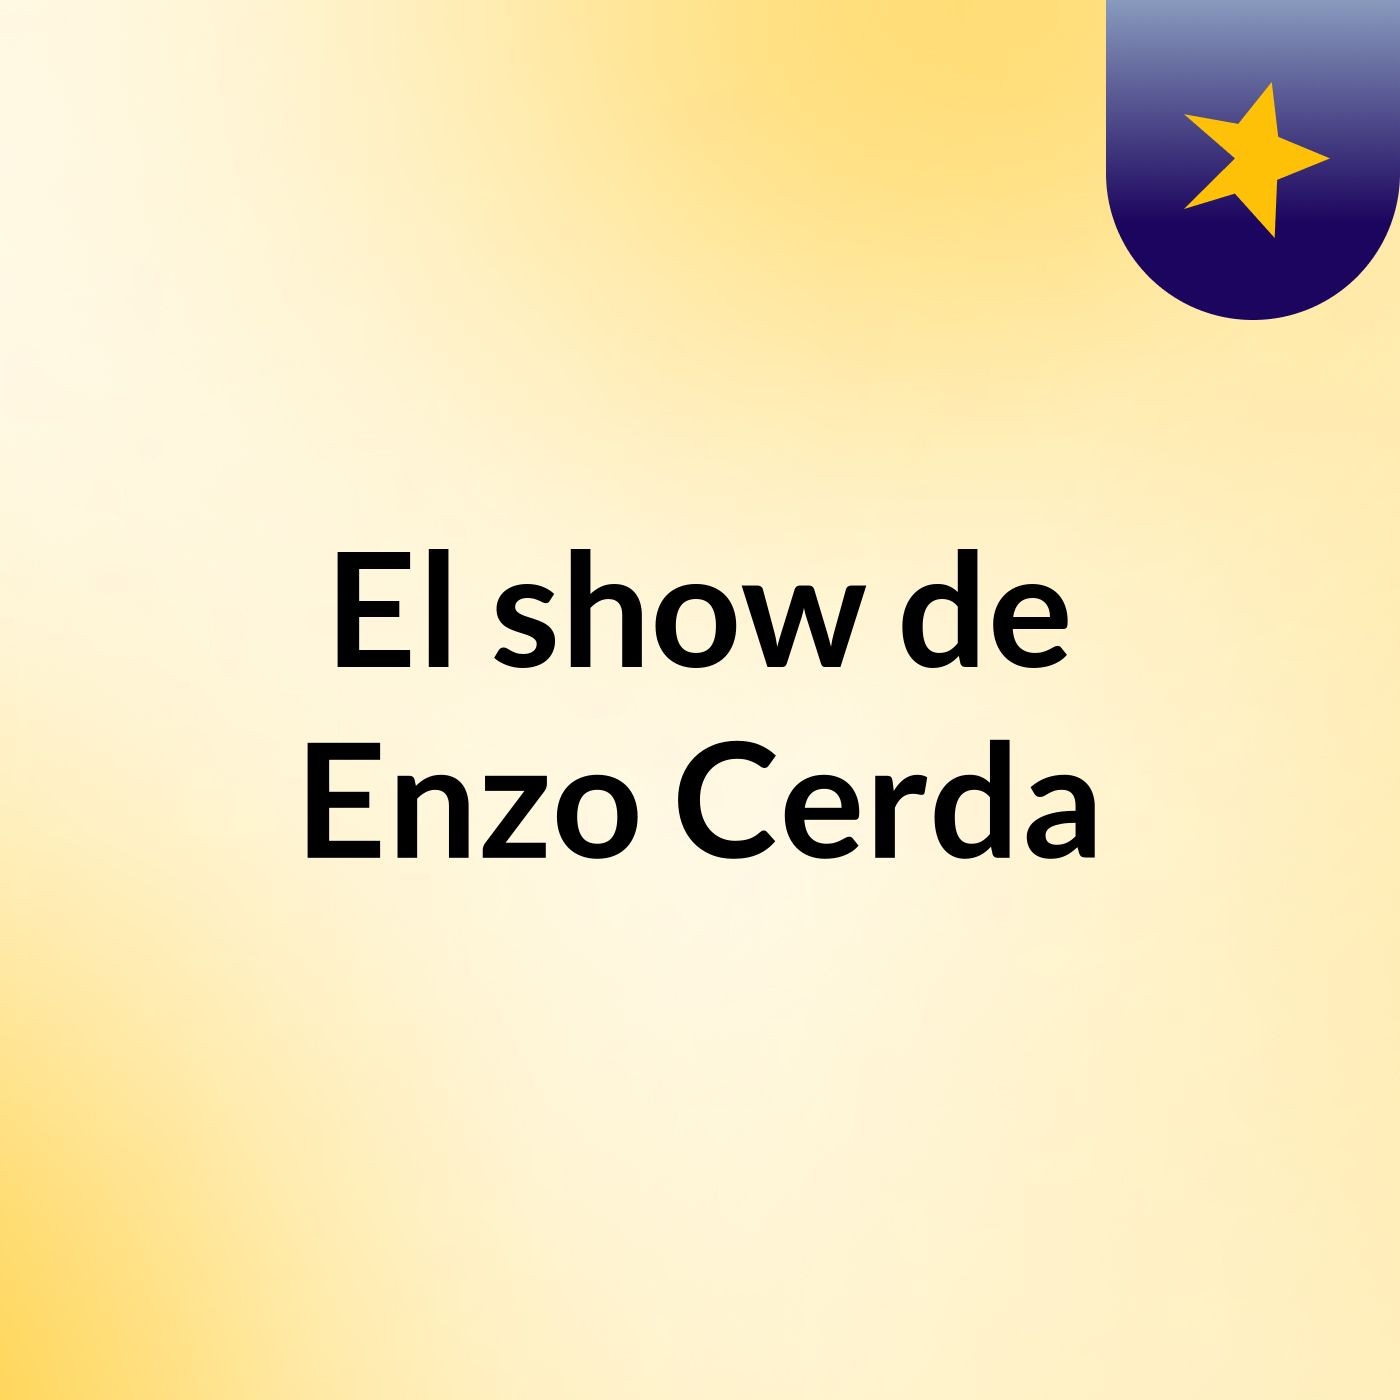 El show de Enzo Cerda